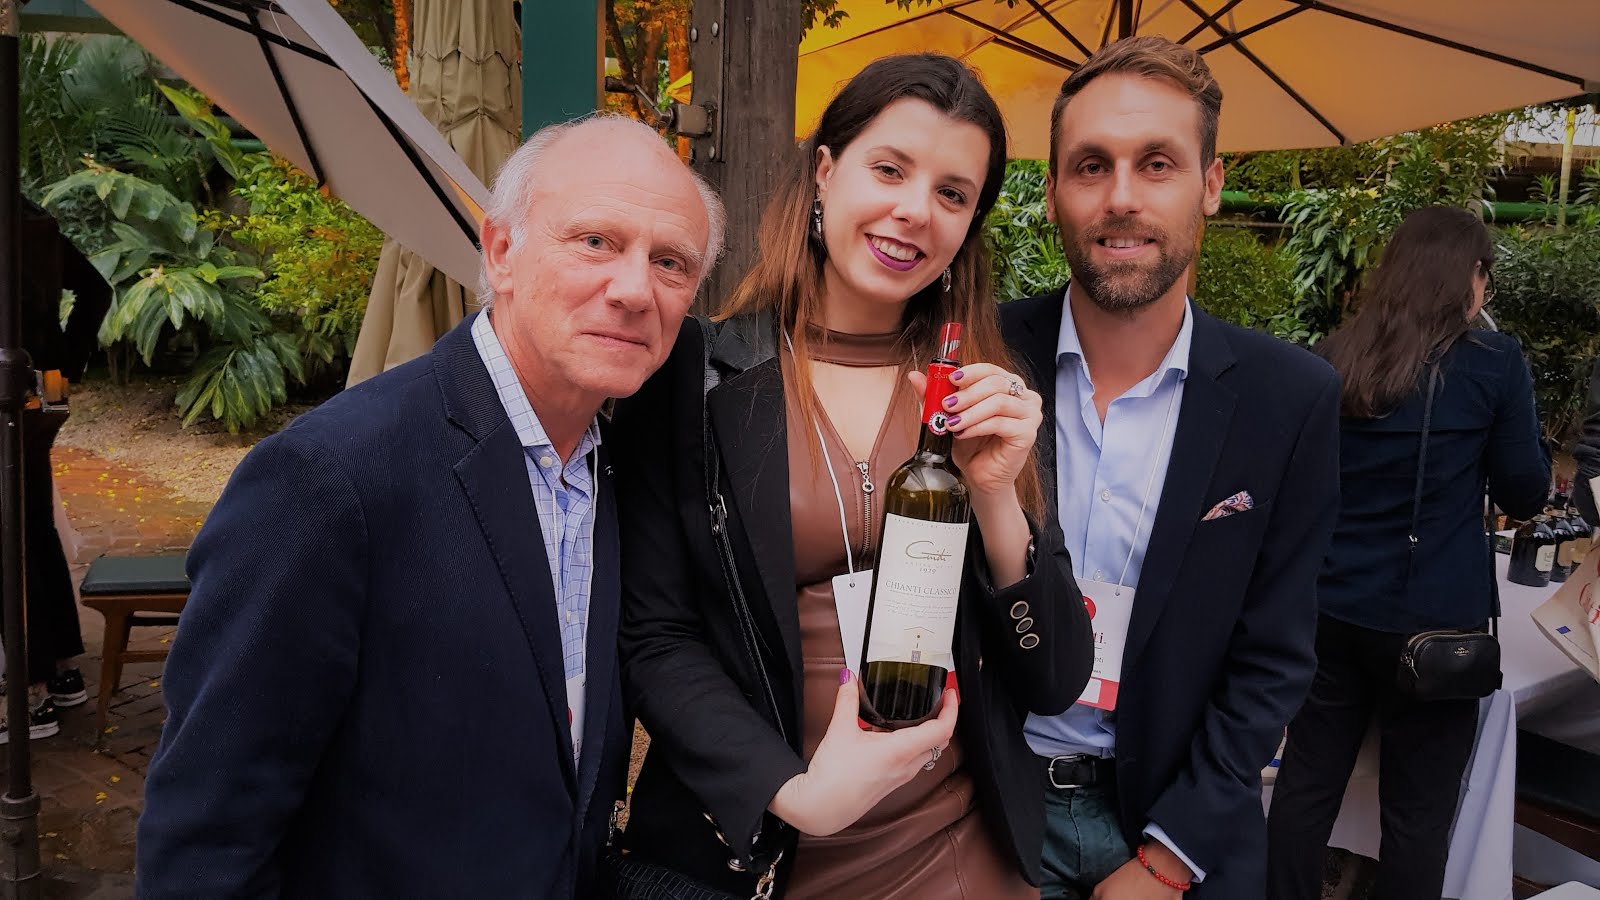 Momento com Nicola Guidi da vinícola Guidi e   a esquerda Bruno Airaghi em Evento Chianti .